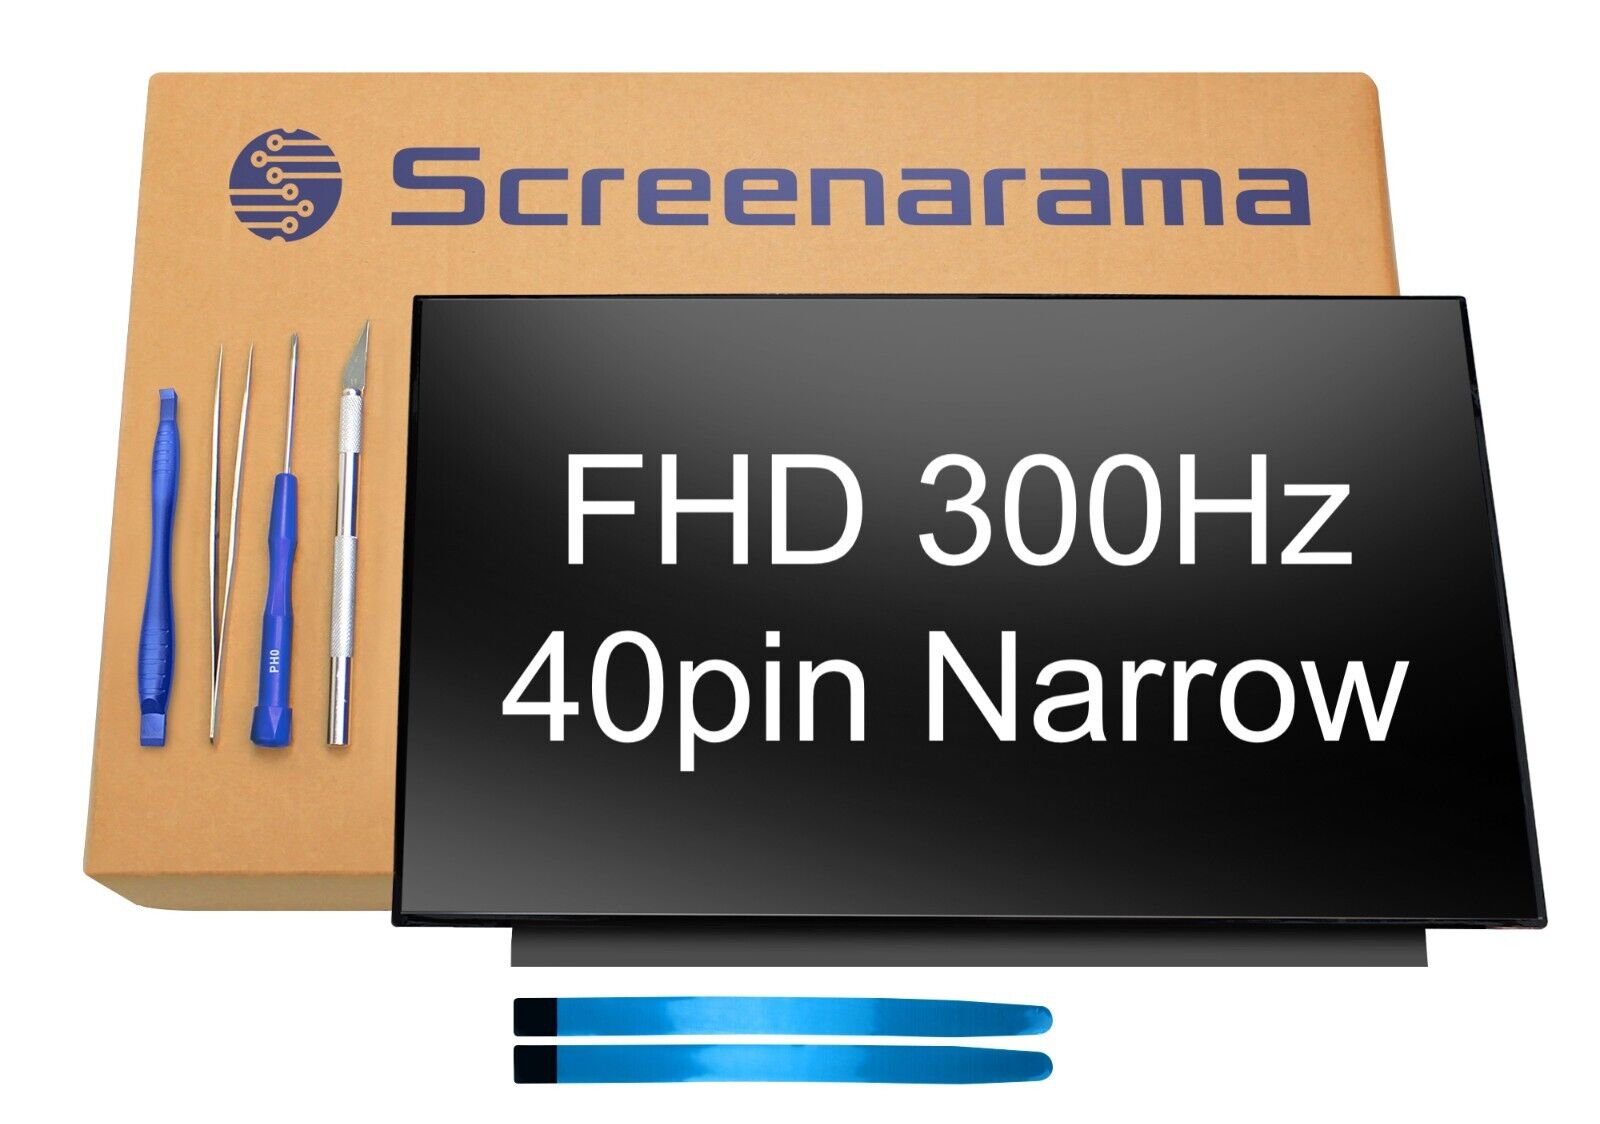 TL156VDXP01-01 FHD 300Hz 40pin Narrow LED LCD Screen + Tools SCREENARAMA * FAST